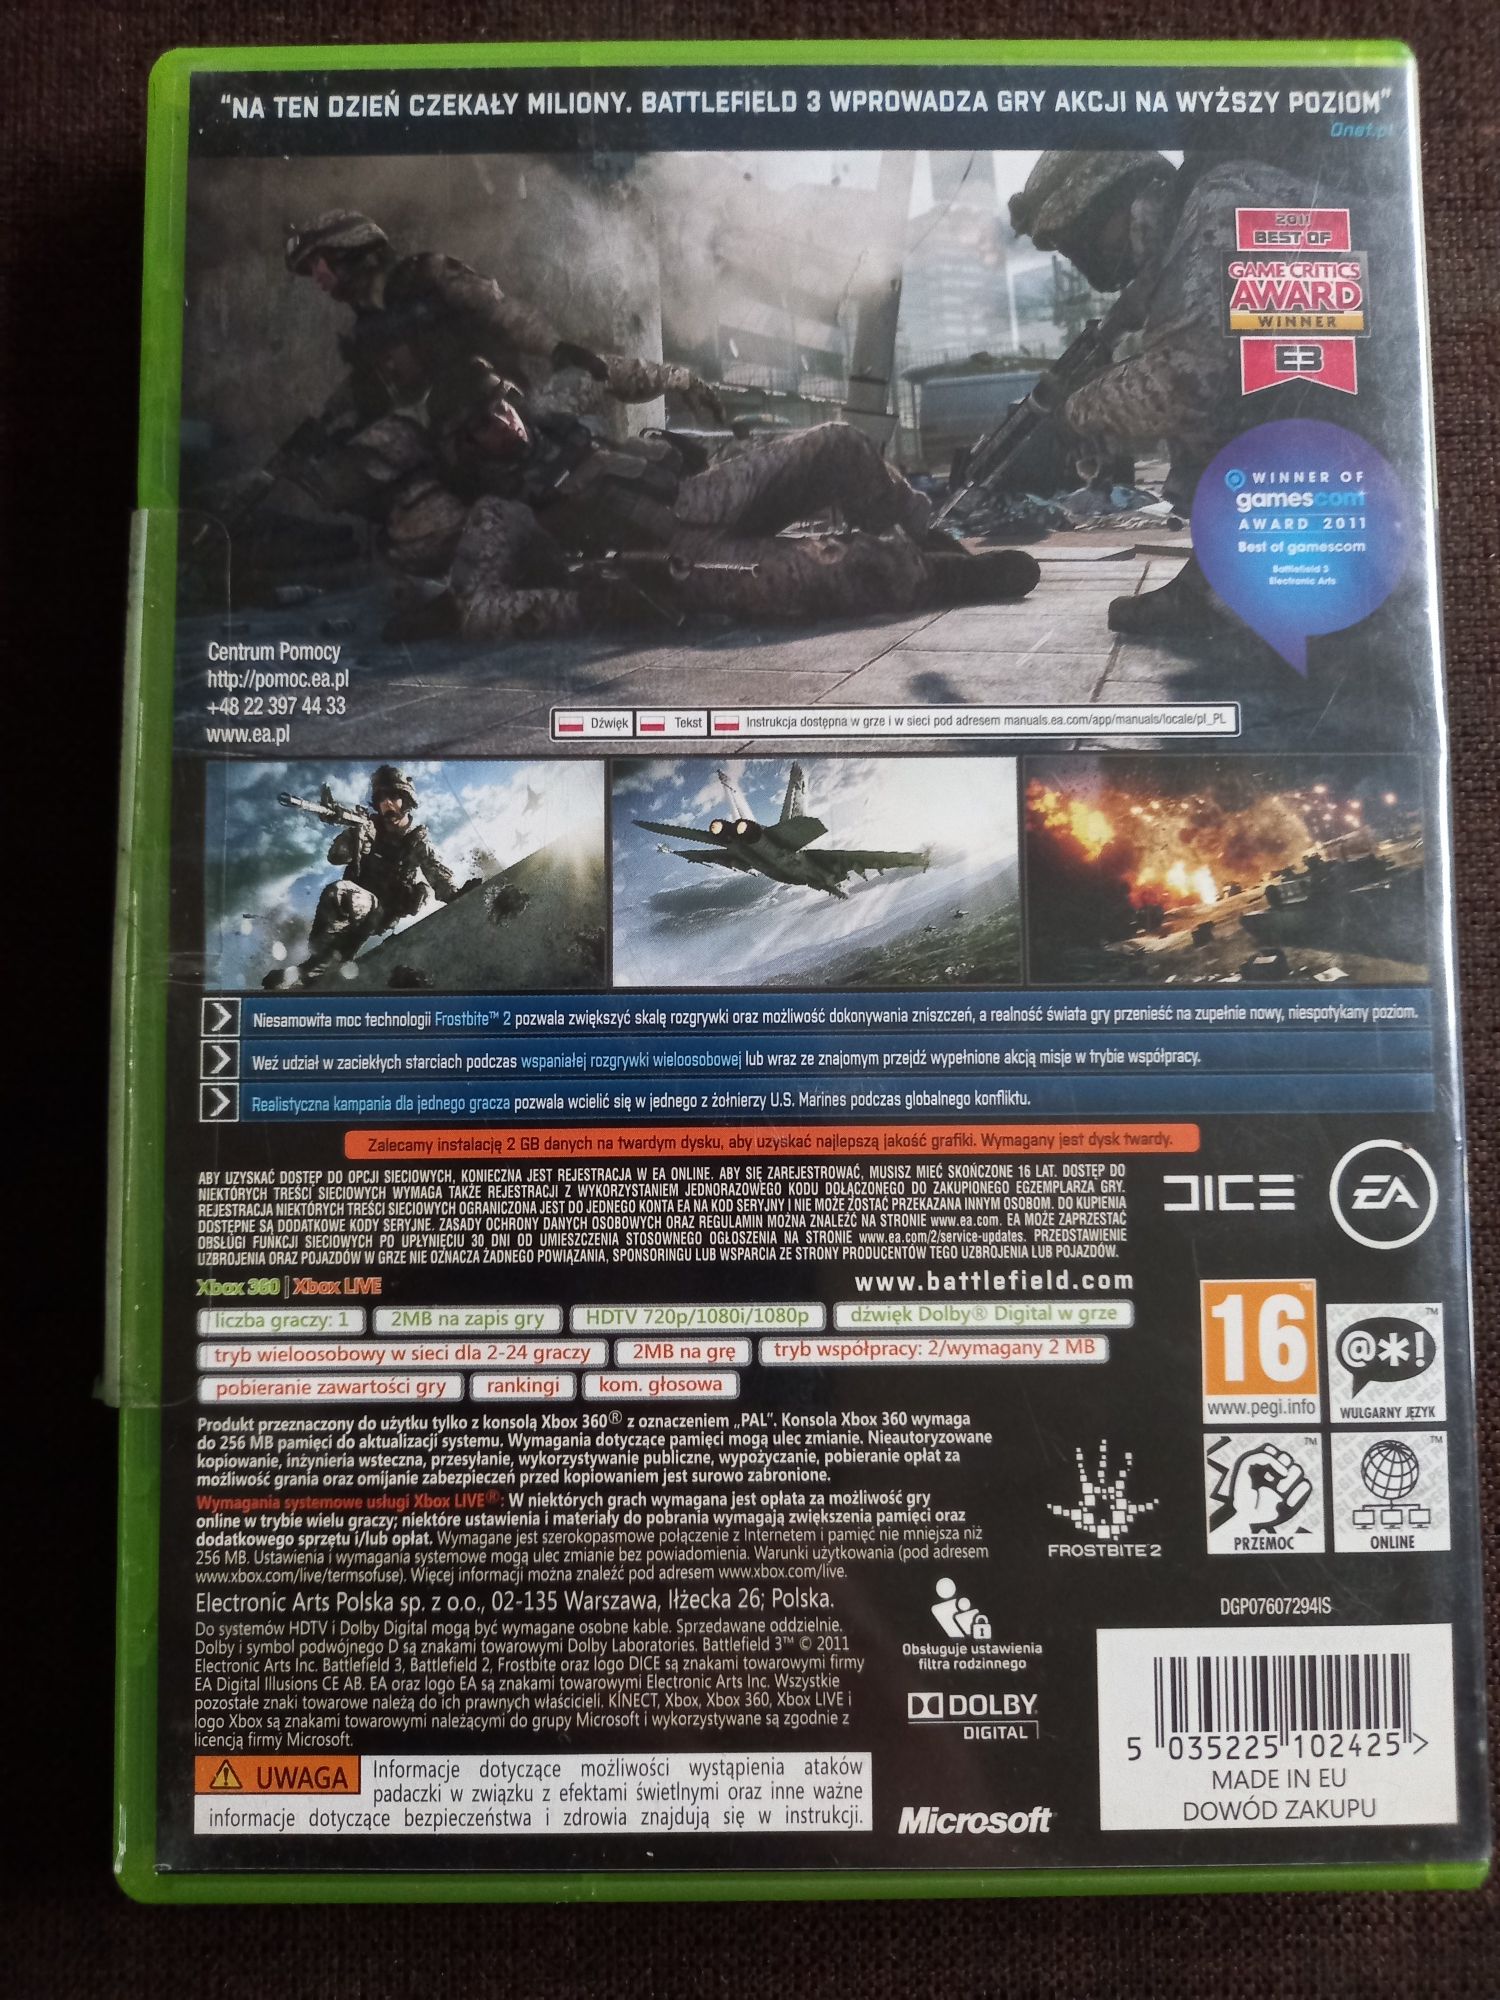 Gra Battlefield 3 na xbox 360 Polska wersja!